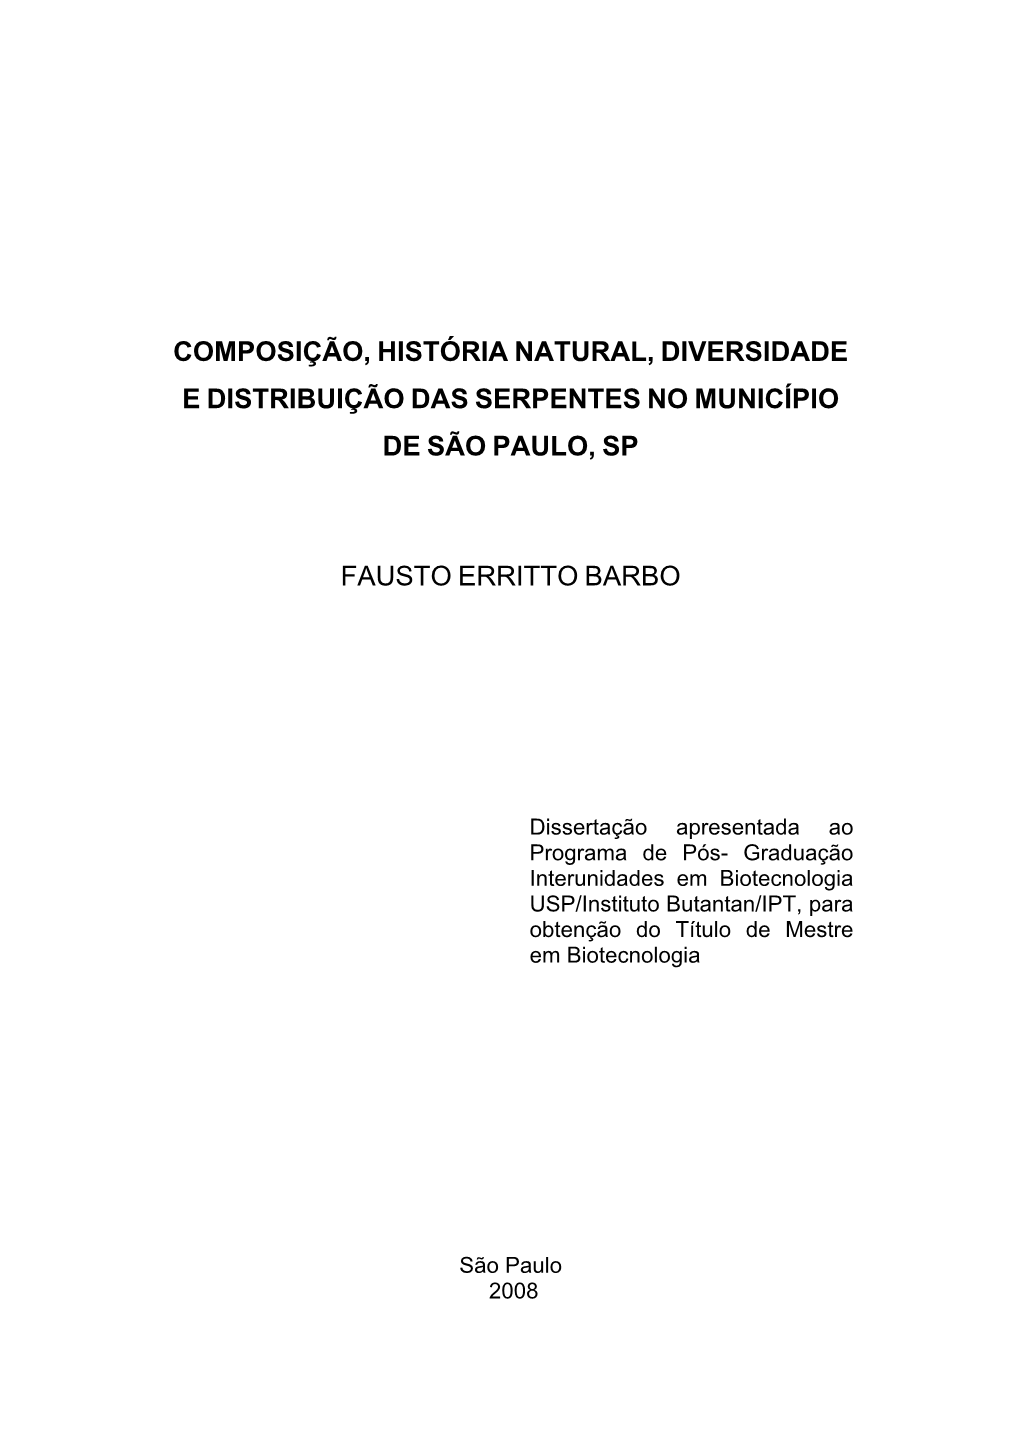 Composição, História Natural, Diversidade E Distribuição Das Serpentes No Município De São Paulo, SP / Fausto Erritto Barbo